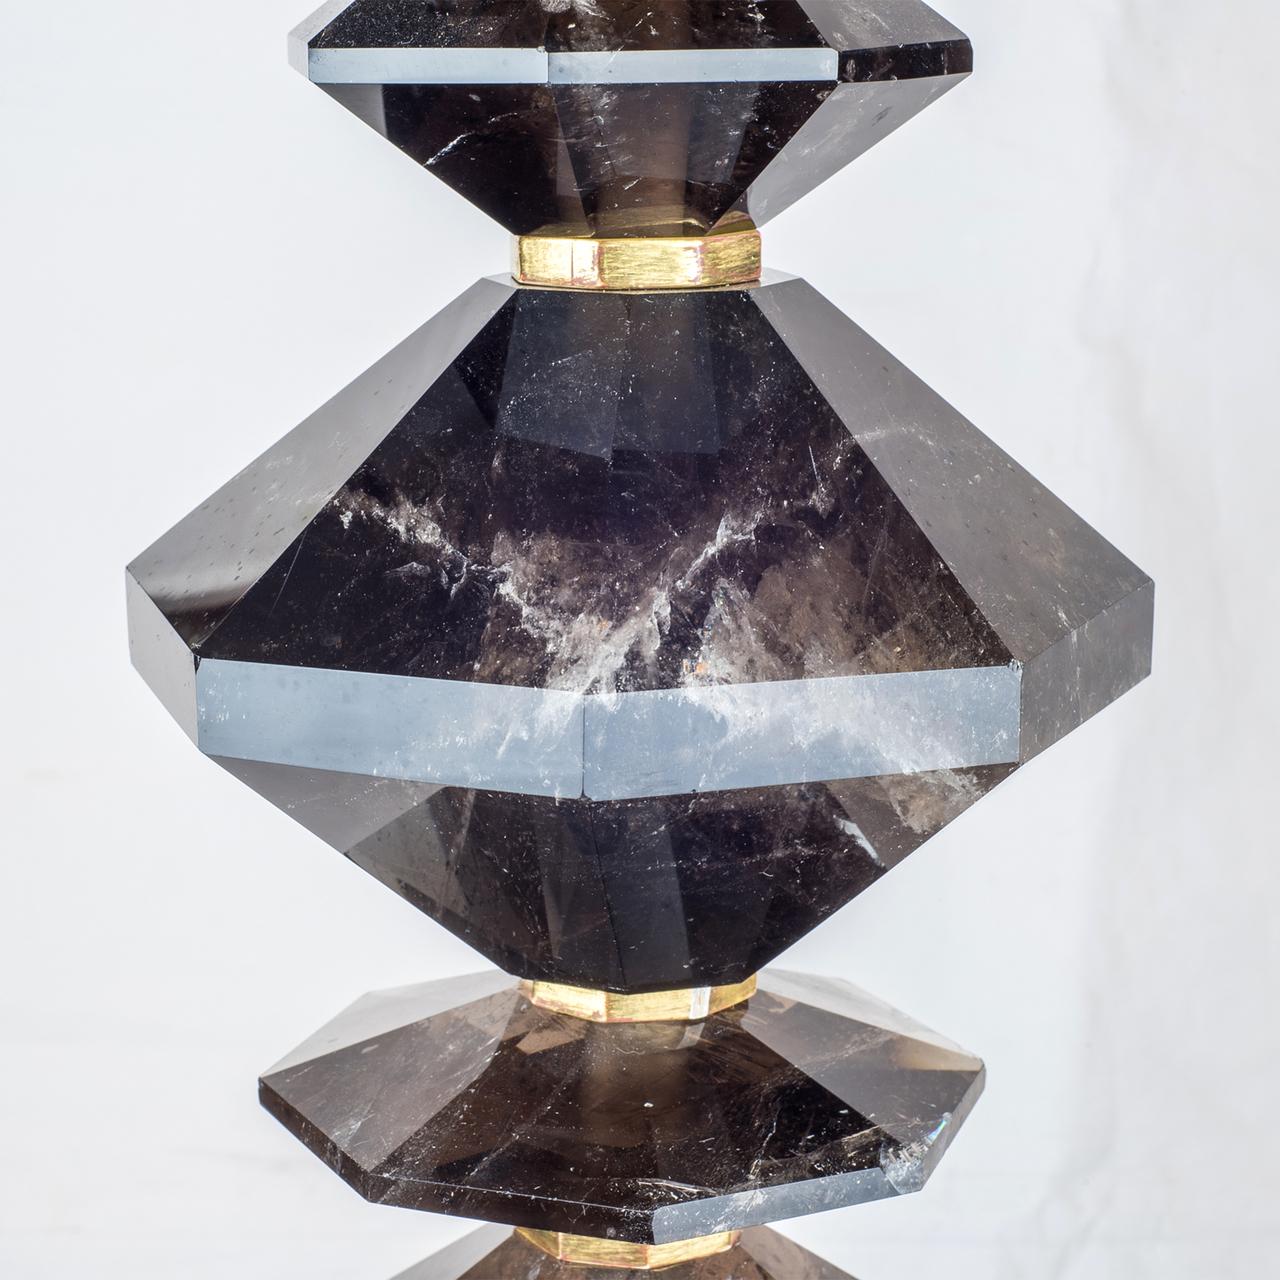 Une belle paire de lampes de table en cristal de roche français avec un design de disque octogonal et une base en bois doré.

Origine : Français
Date : Début du 20e siècle
Dimension : 33 po x 7 1/4 po x 7 1/4 po,